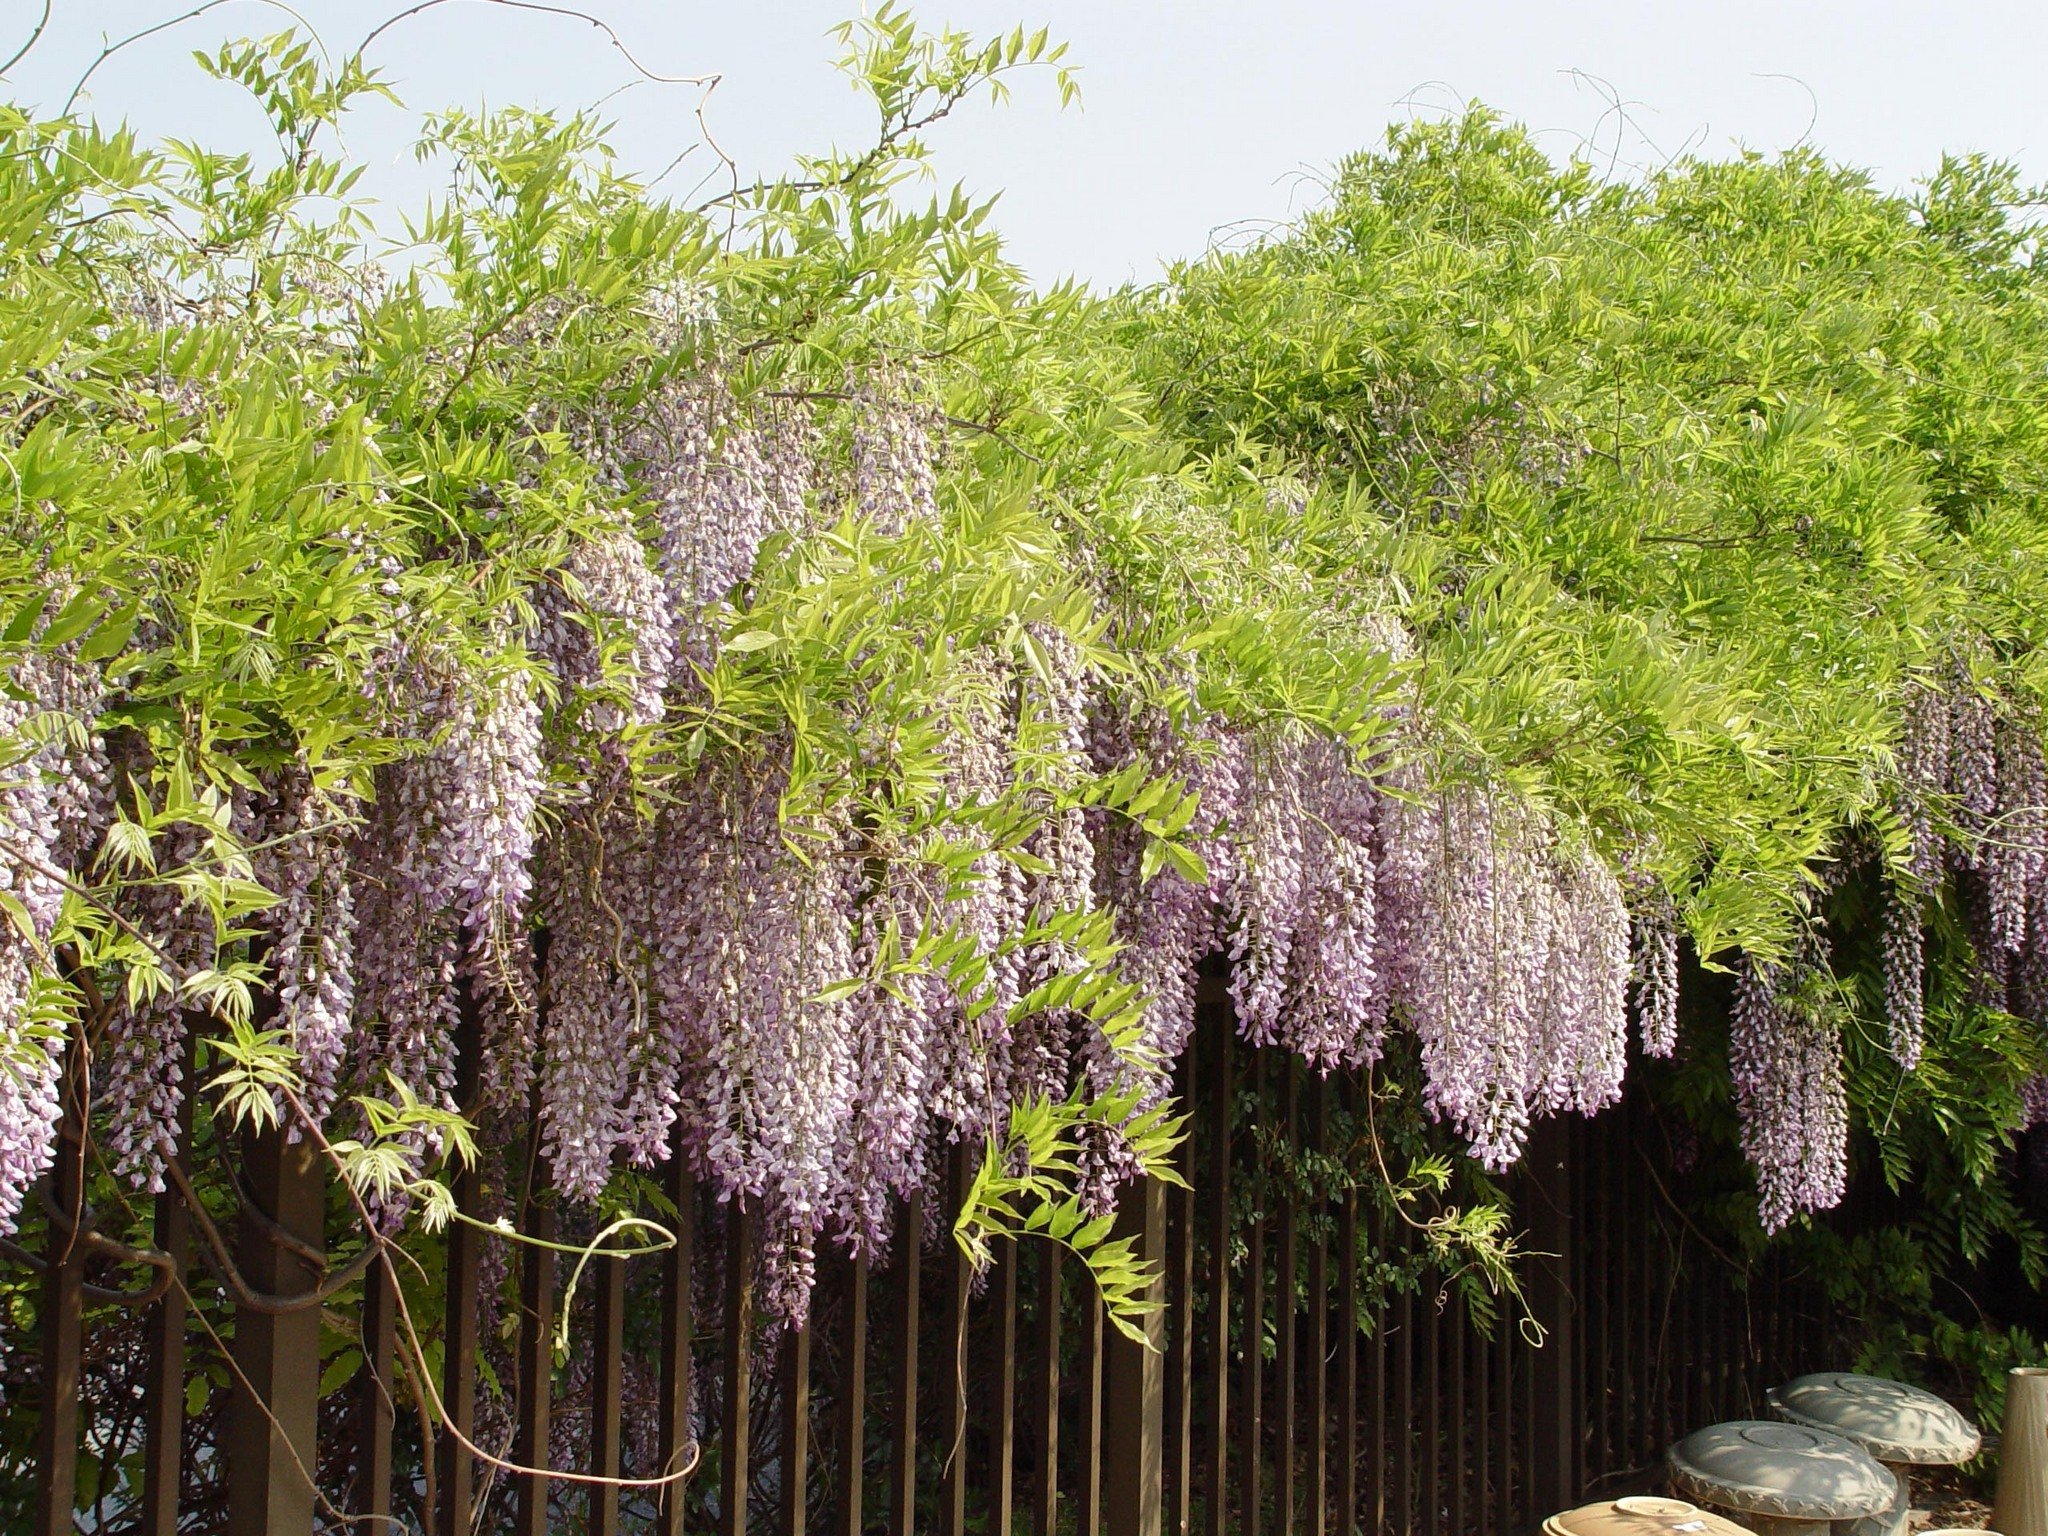 Moving a wisteria | PennLive.com